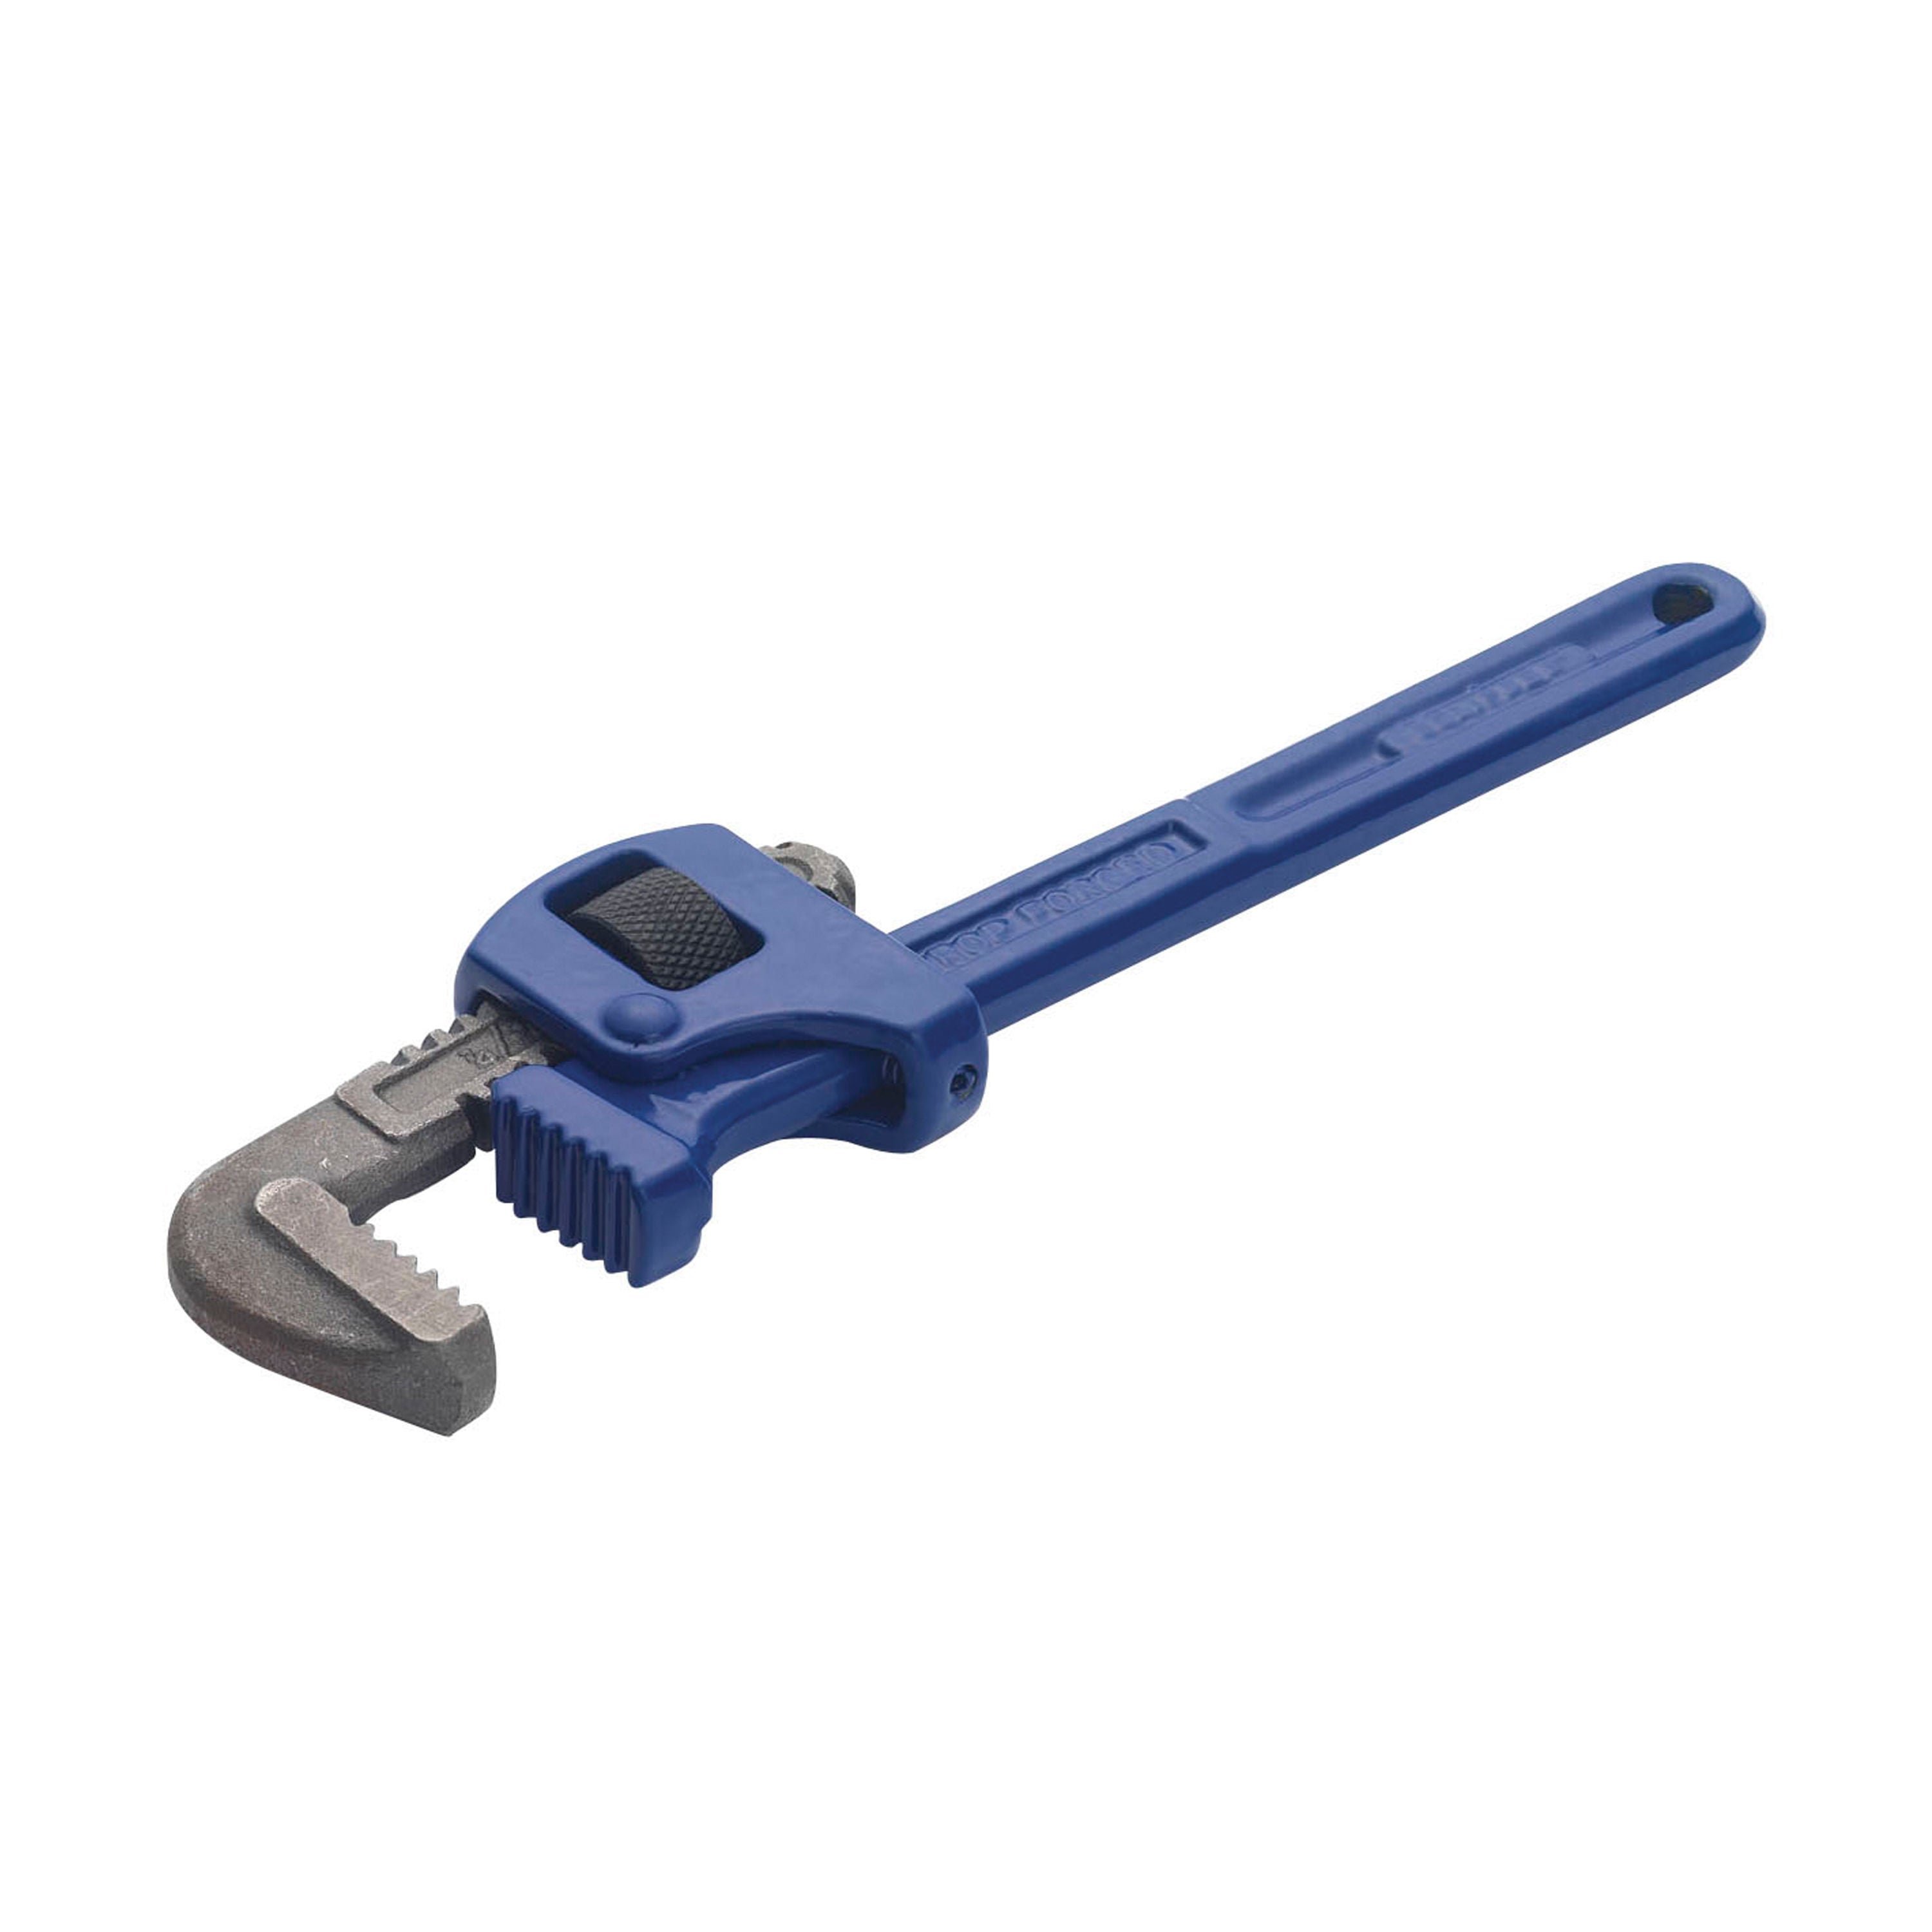 ESPW Stillson Pipe Wrench 14"